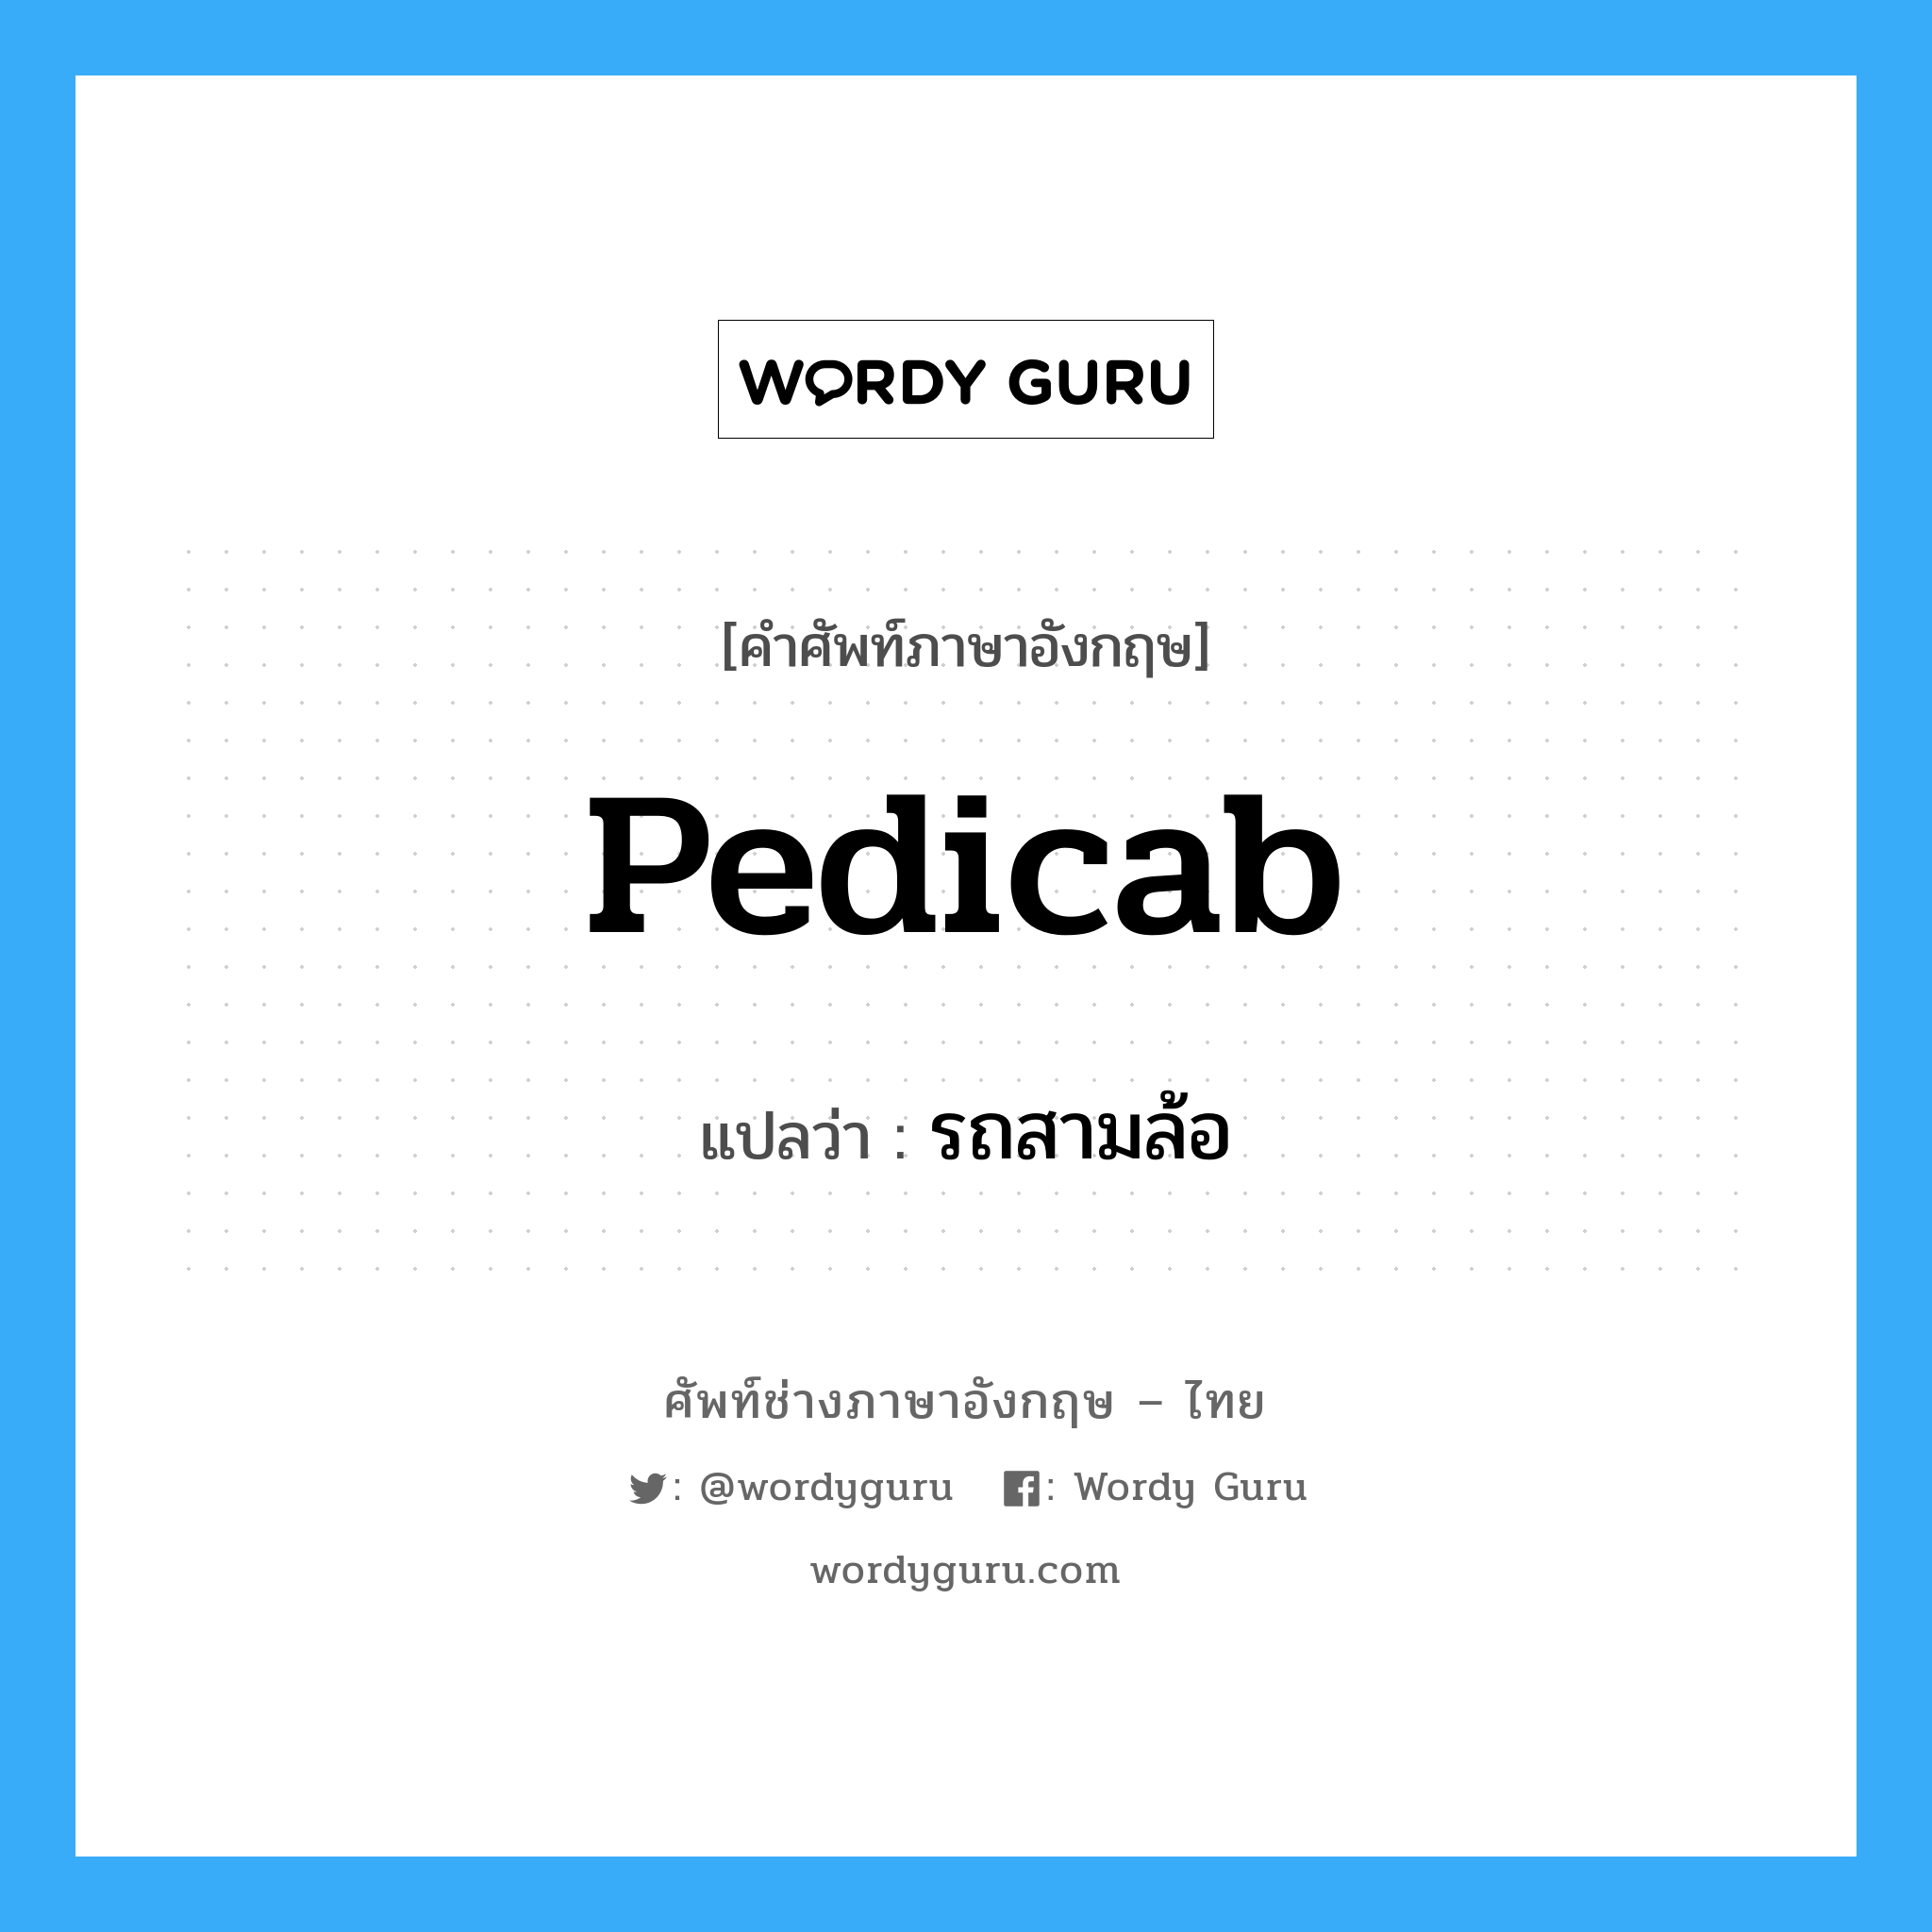 รถสามล้อ ภาษาอังกฤษ?, คำศัพท์ช่างภาษาอังกฤษ - ไทย รถสามล้อ คำศัพท์ภาษาอังกฤษ รถสามล้อ แปลว่า pedicab